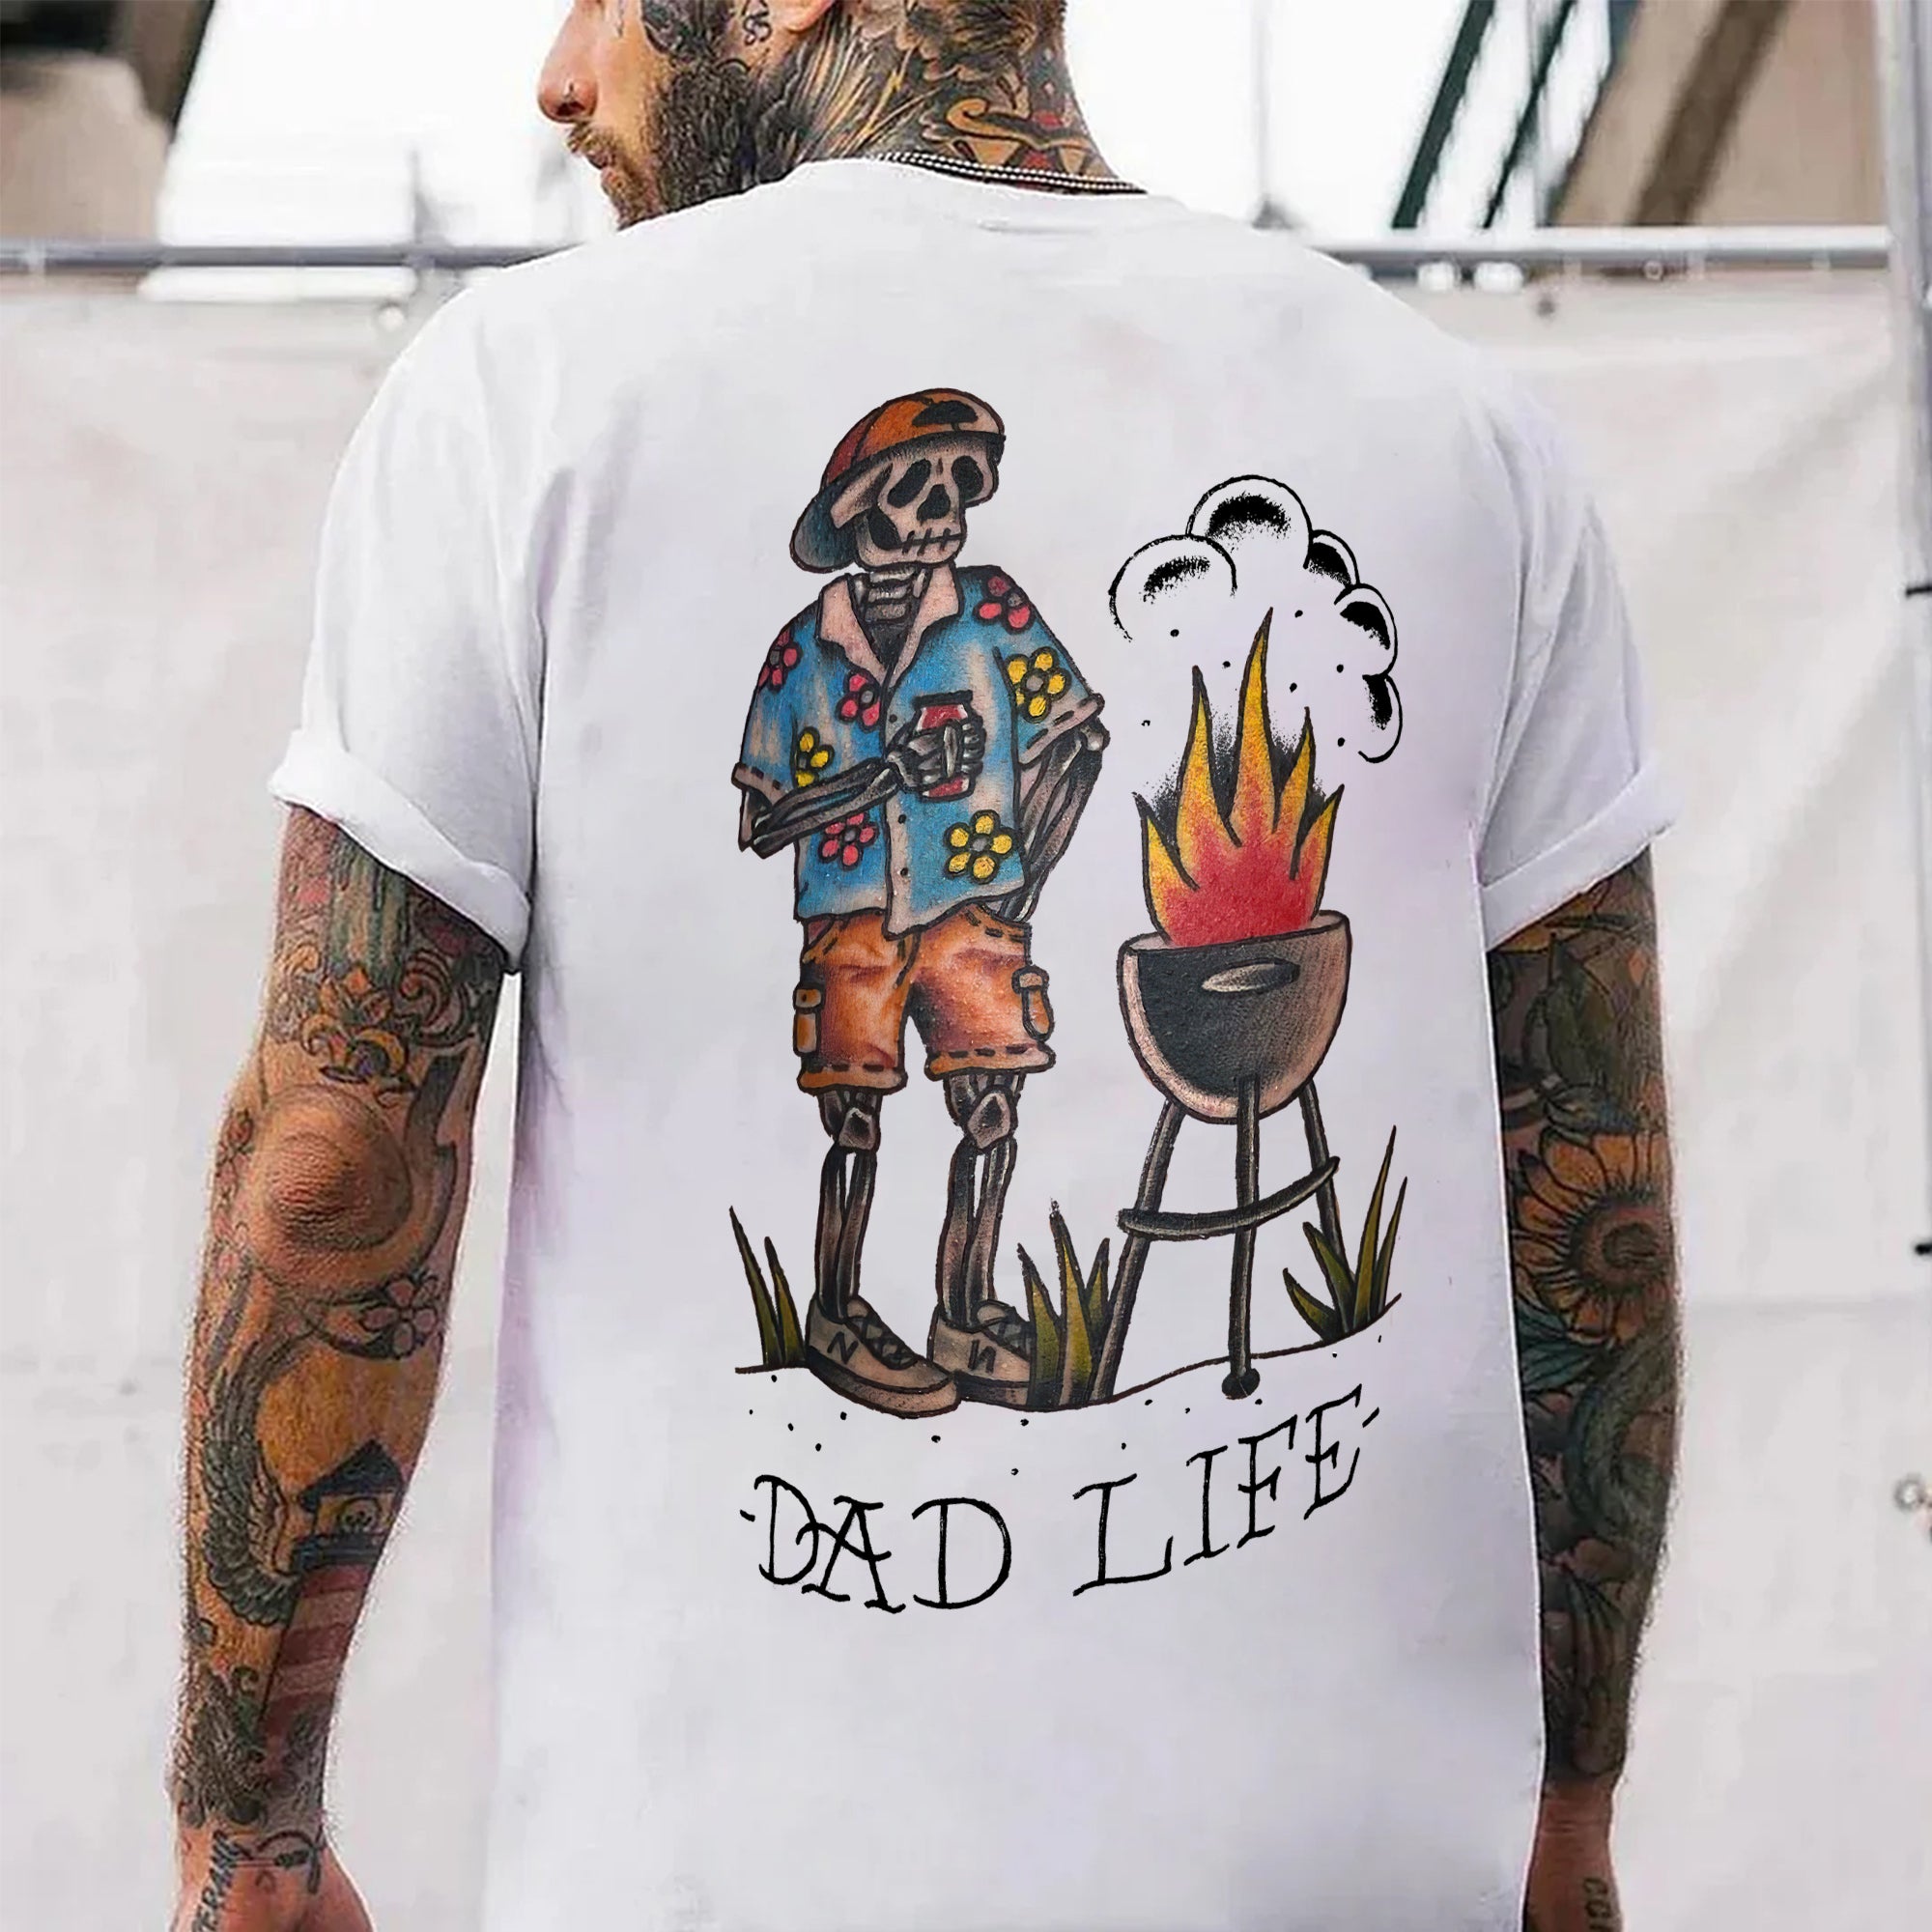 Dad Life Printed Men's T-shirt